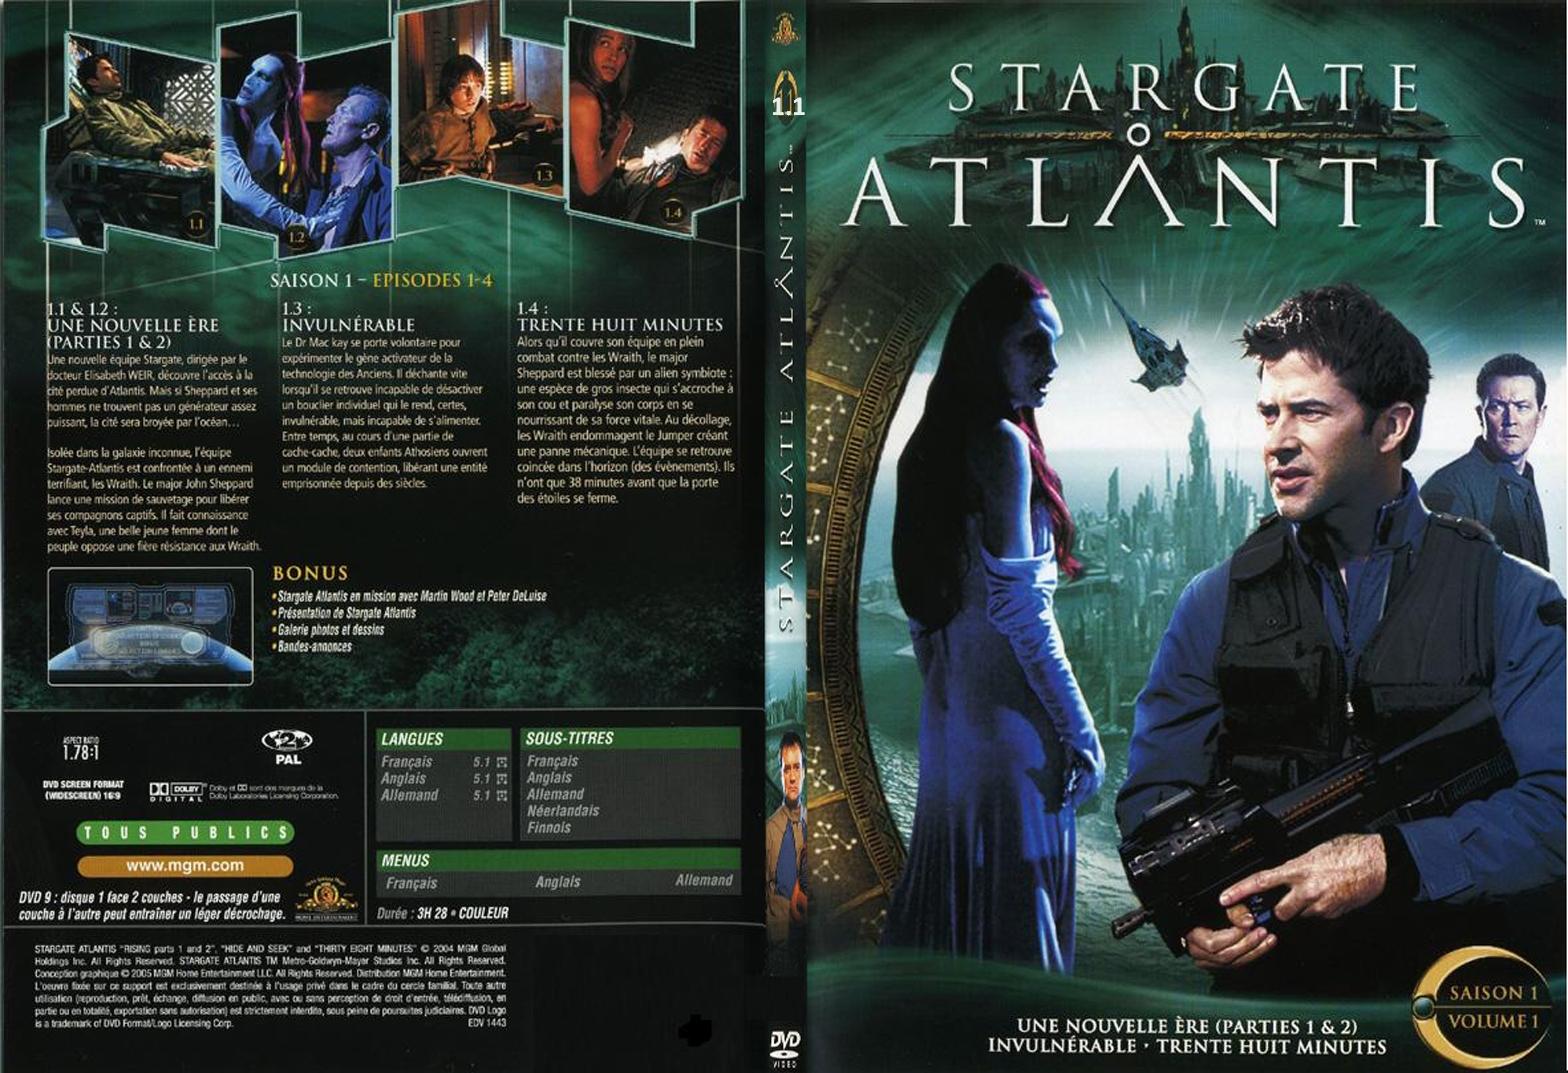 Jaquette DVD Stargate Atlantis saison 1 vol 1 - SLIM